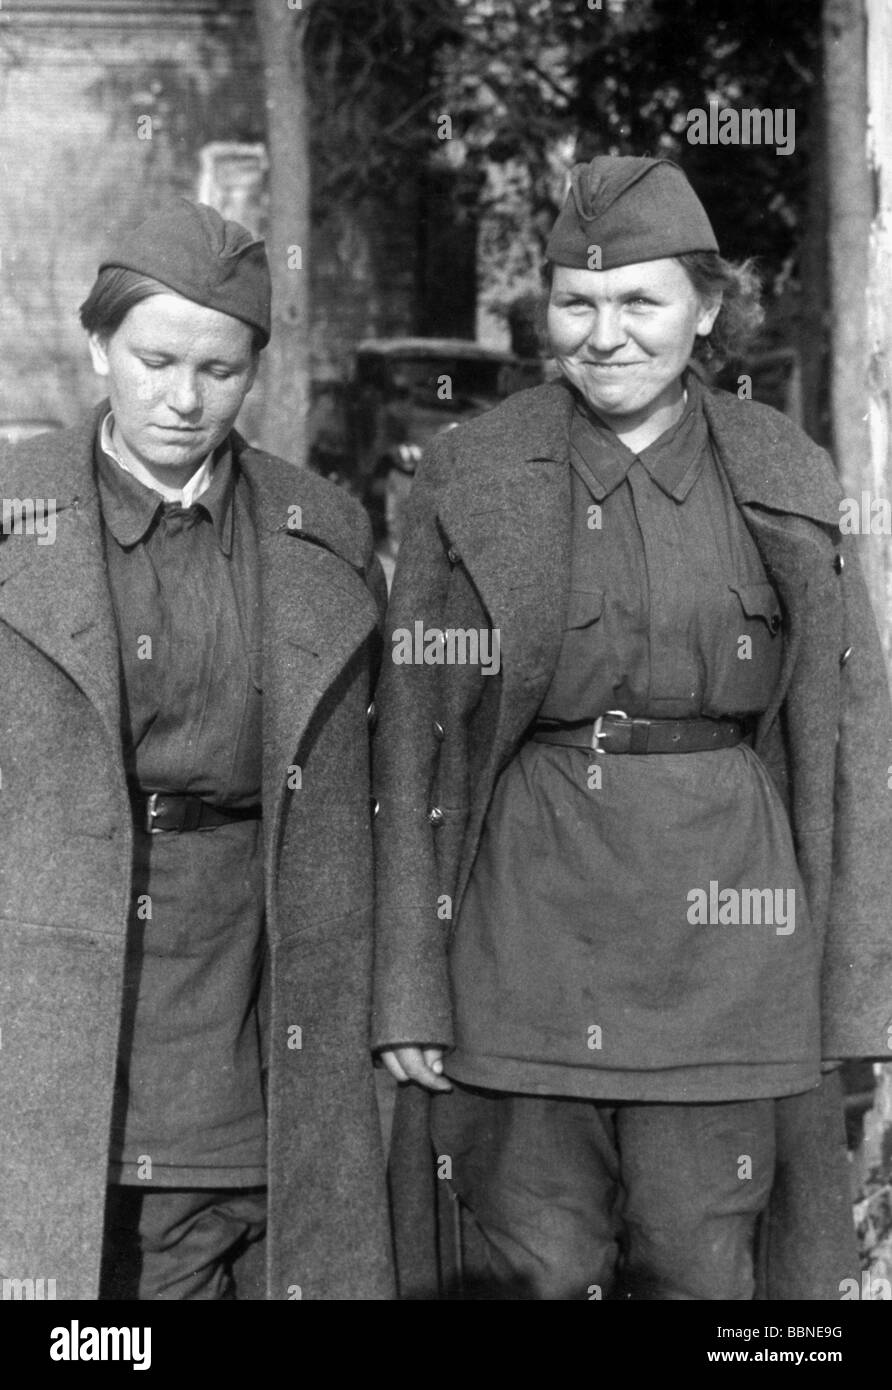 Ereignisse, Zweiter Weltkrieg/zweiter Weltkrieg, Russland, Kriegsgefangene, zwei weibliche Soldaten der Roten Armee, gefangen genommen in Dukhovschtschina bei Smolensk, Juli 1941, Stockfoto